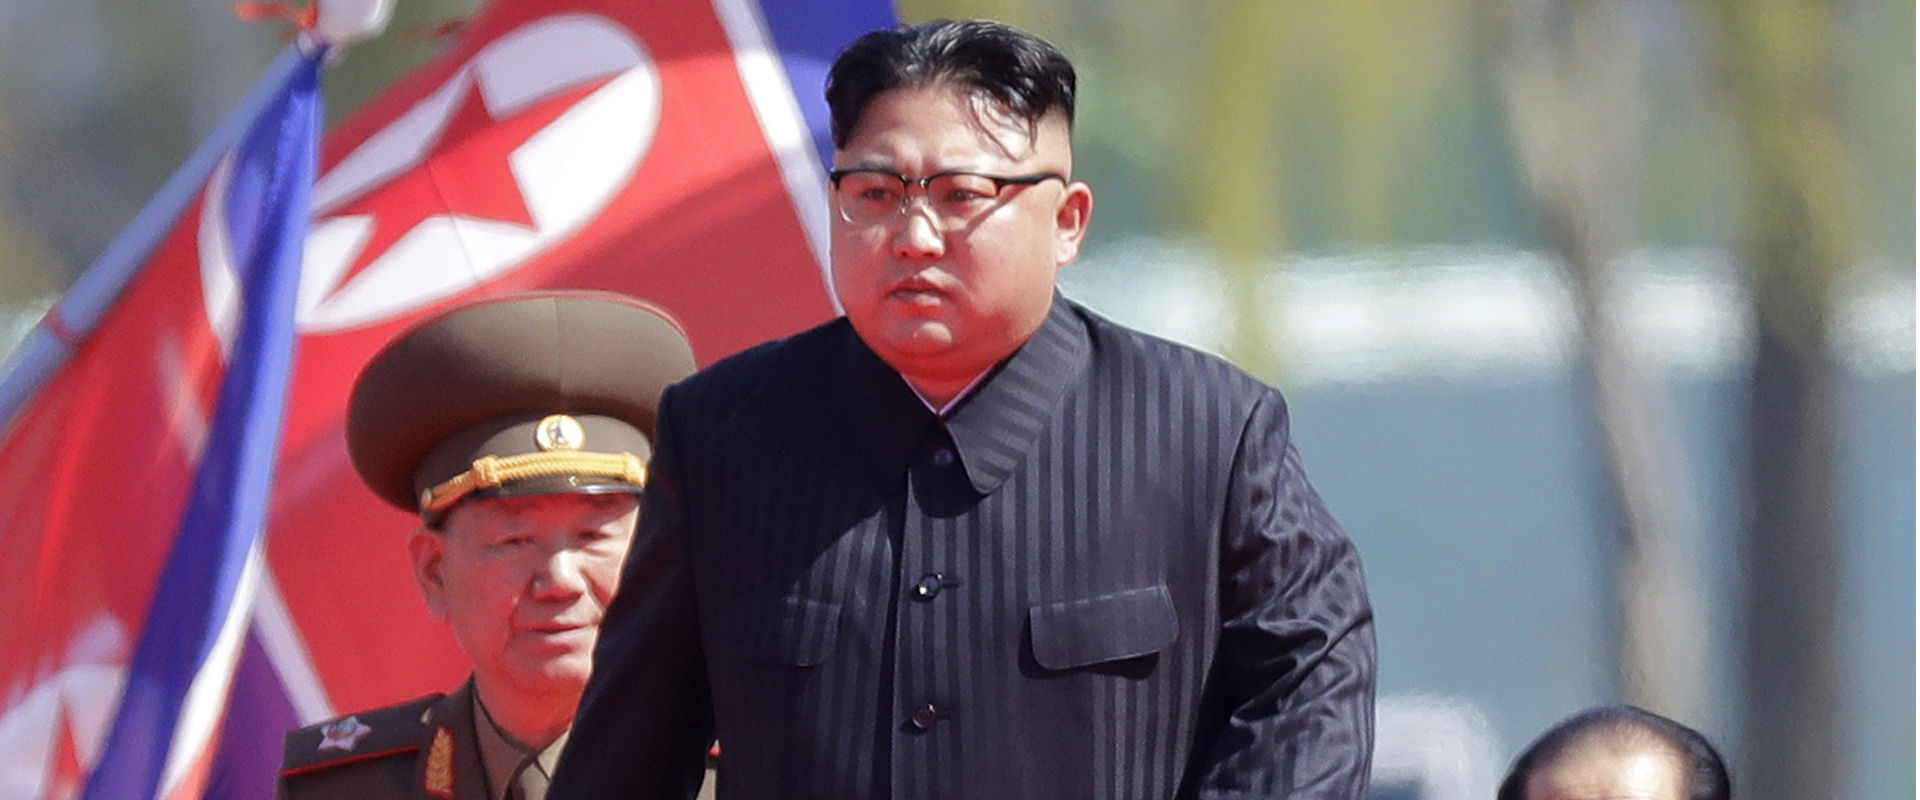 נשיא קוריאה הצפונית, קים ג'ונג און